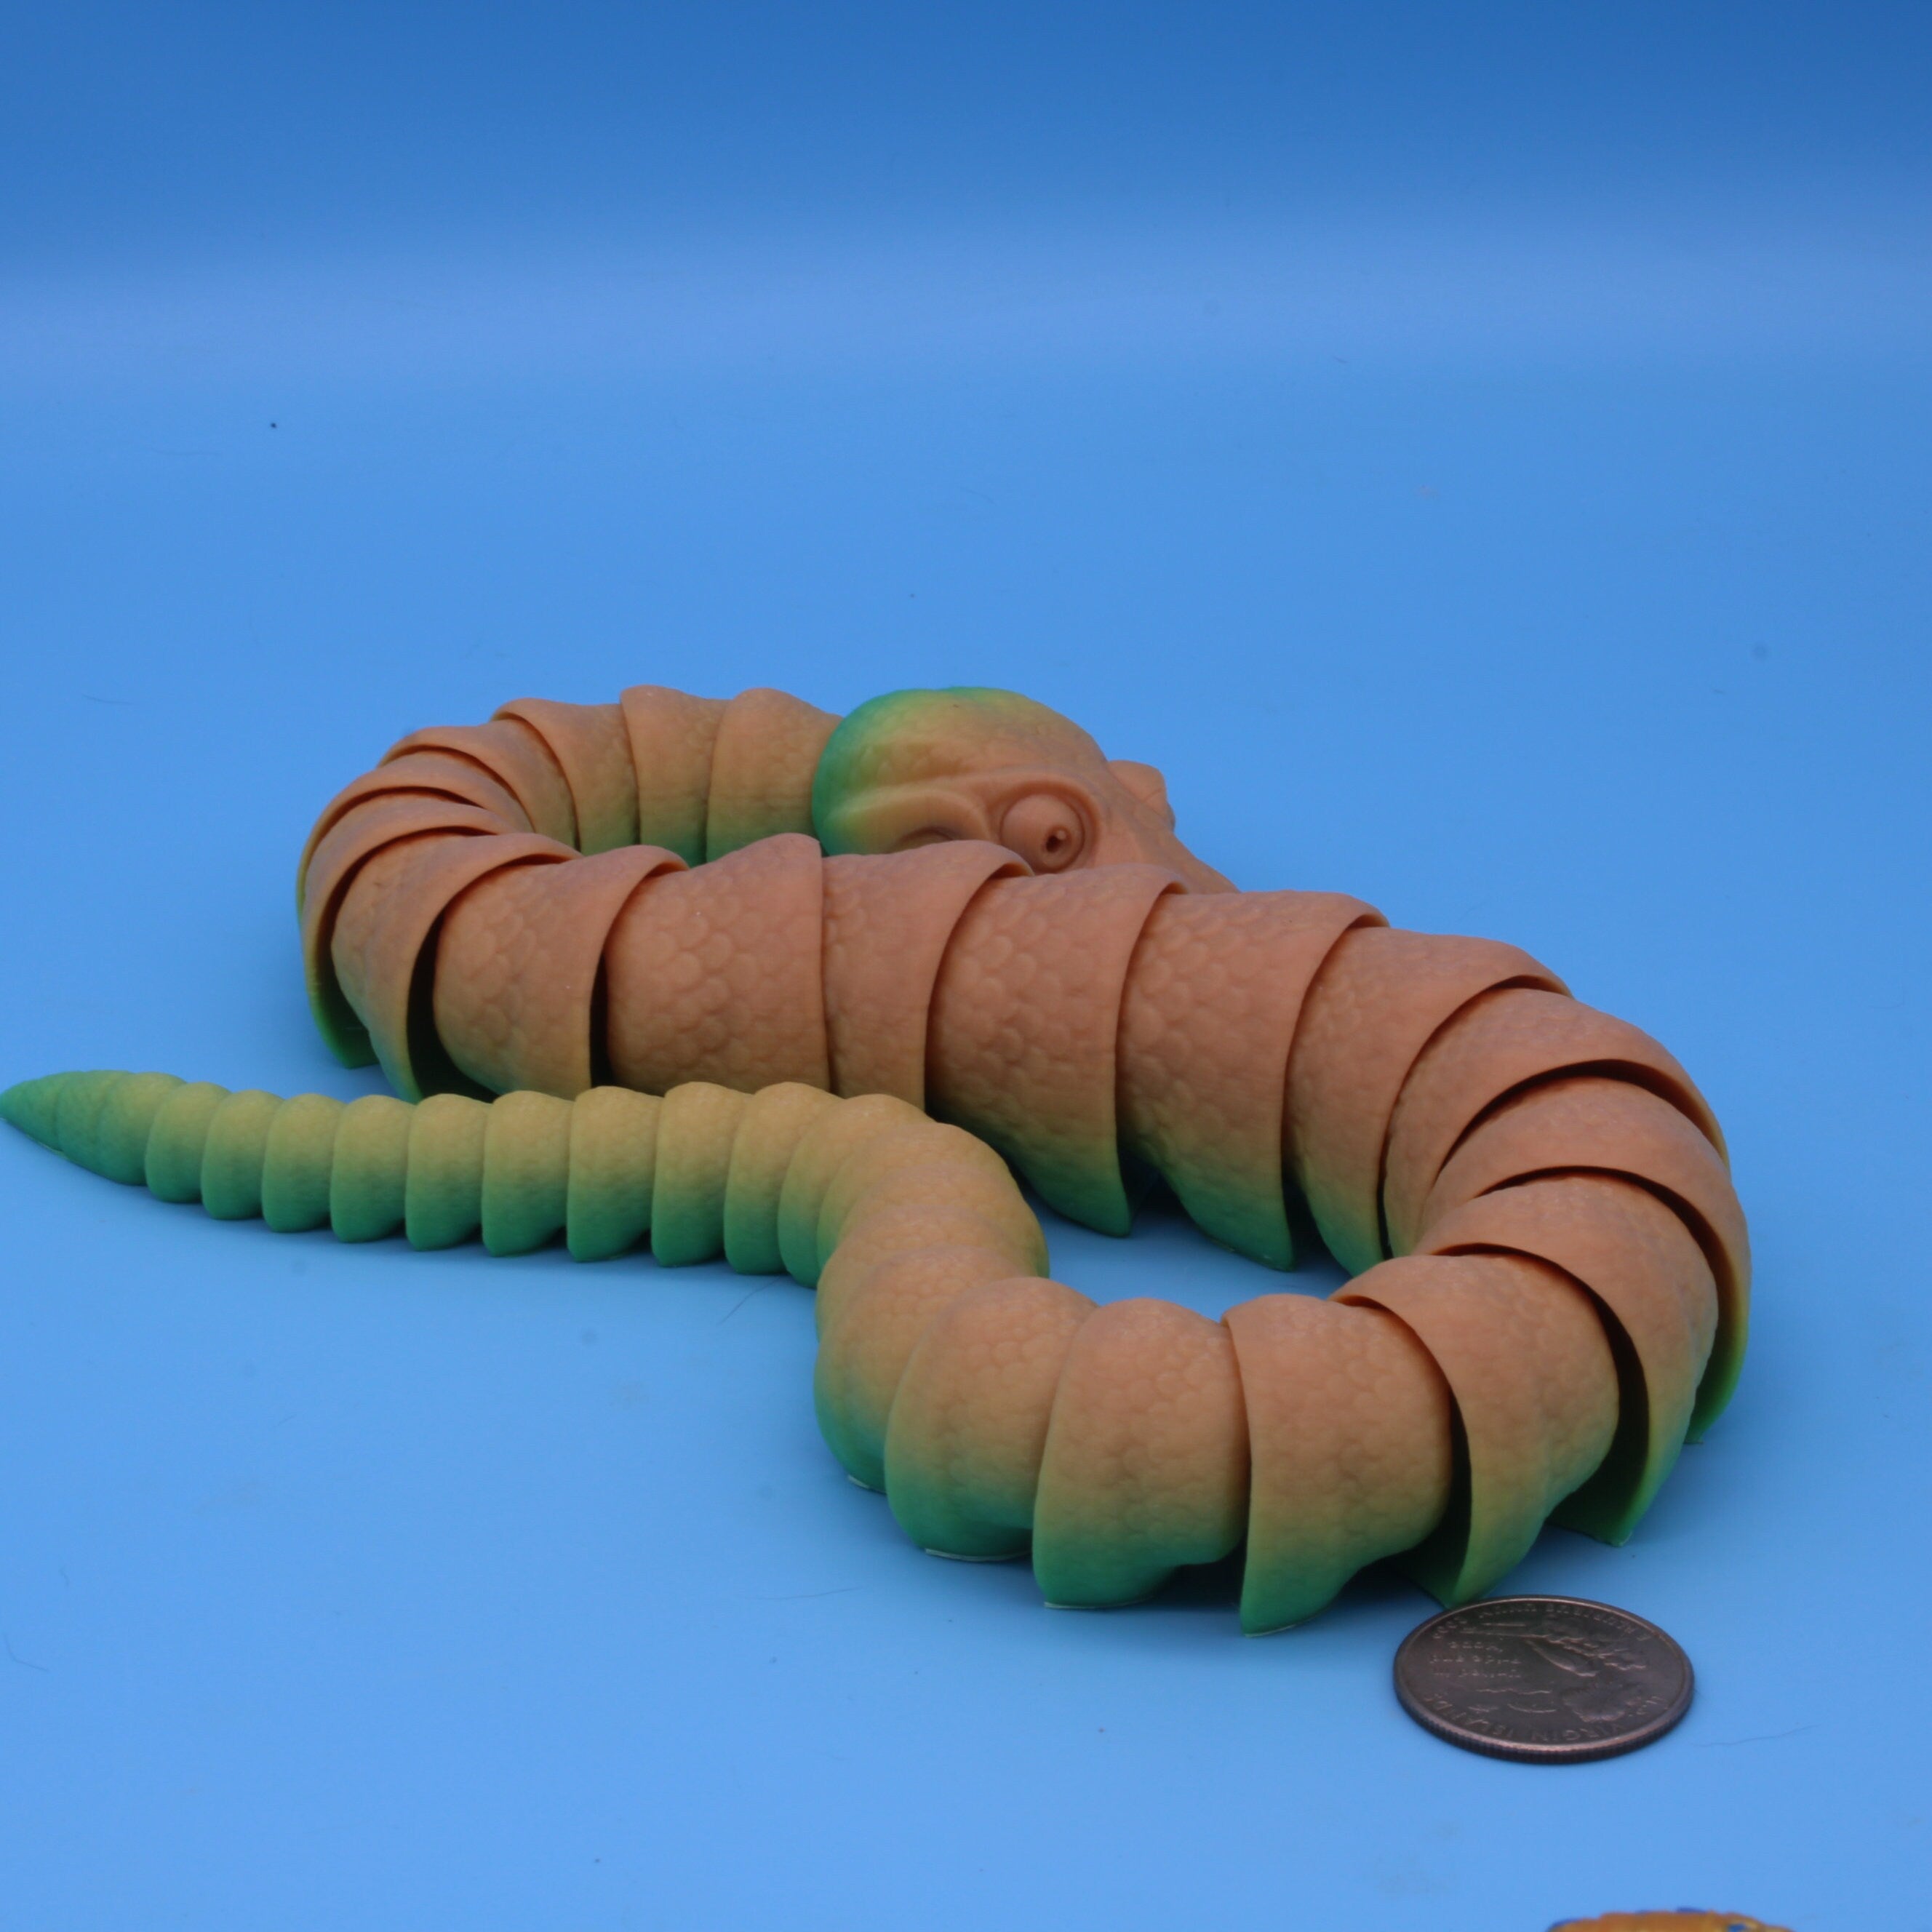 Snakes - 3D Printed Ball Python